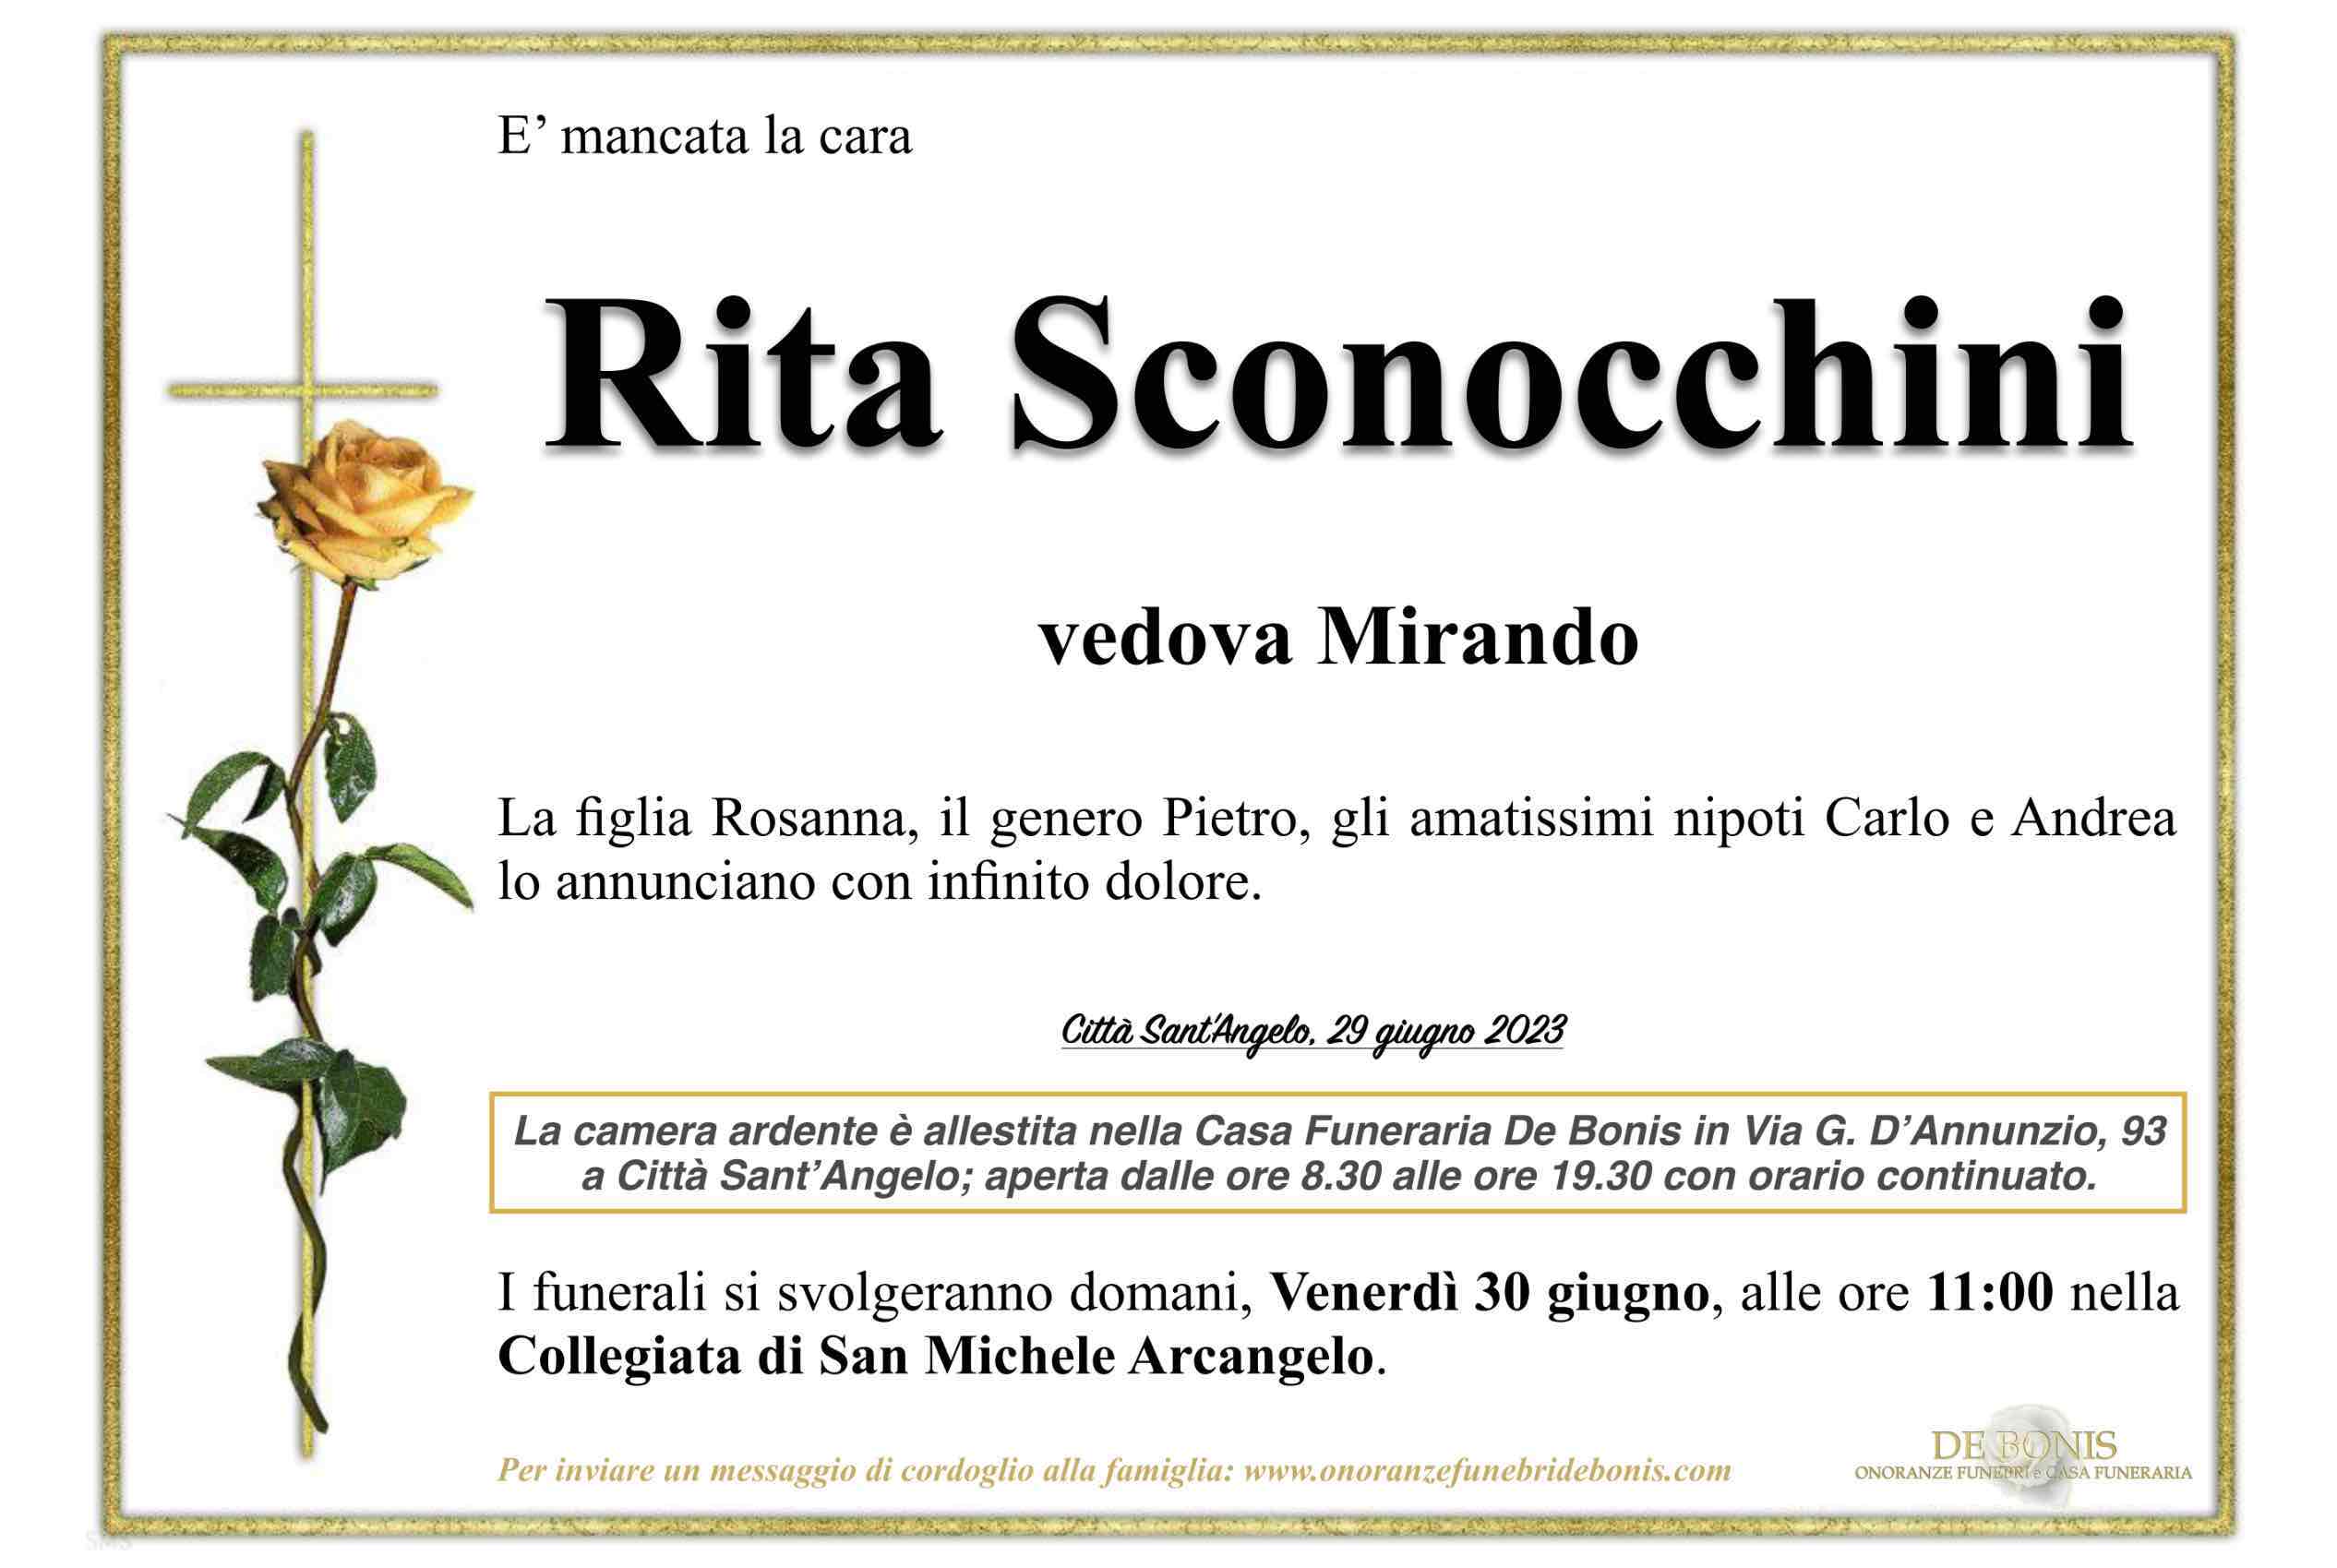 Rita Sconocchini